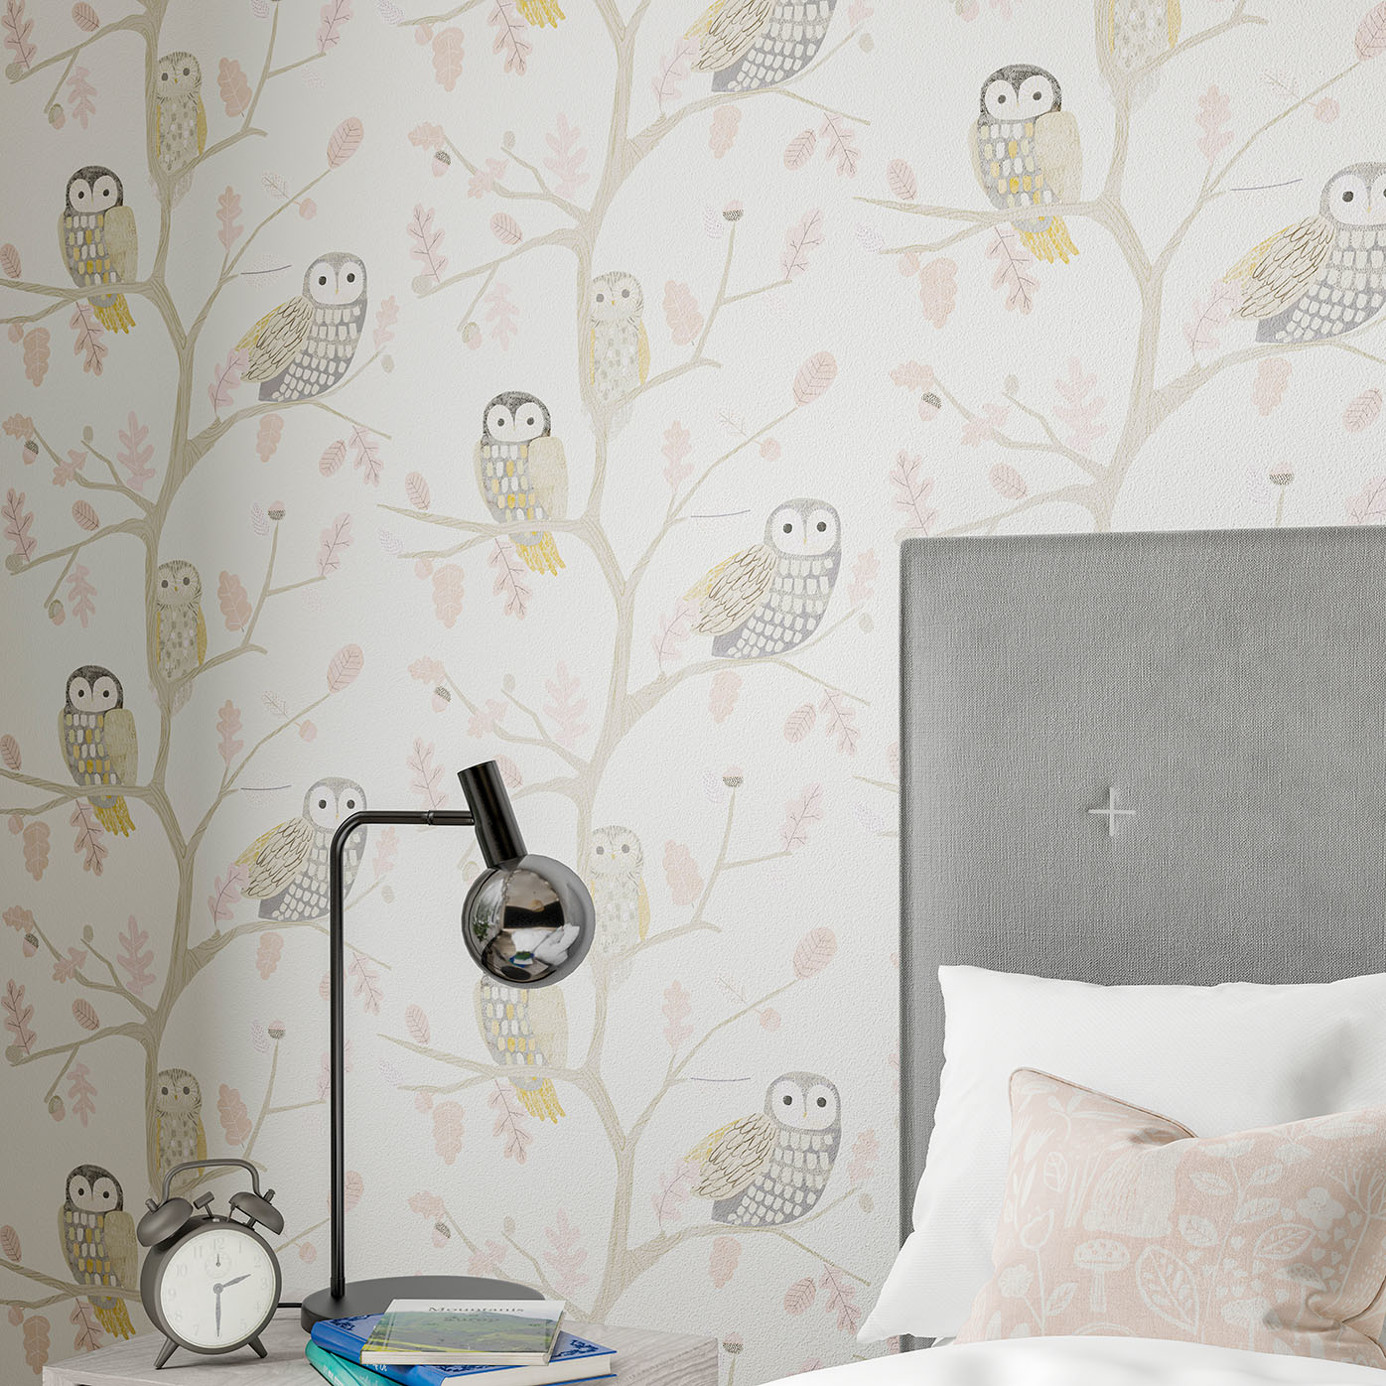 Little Owls Kiwi Wallpaper by HAR